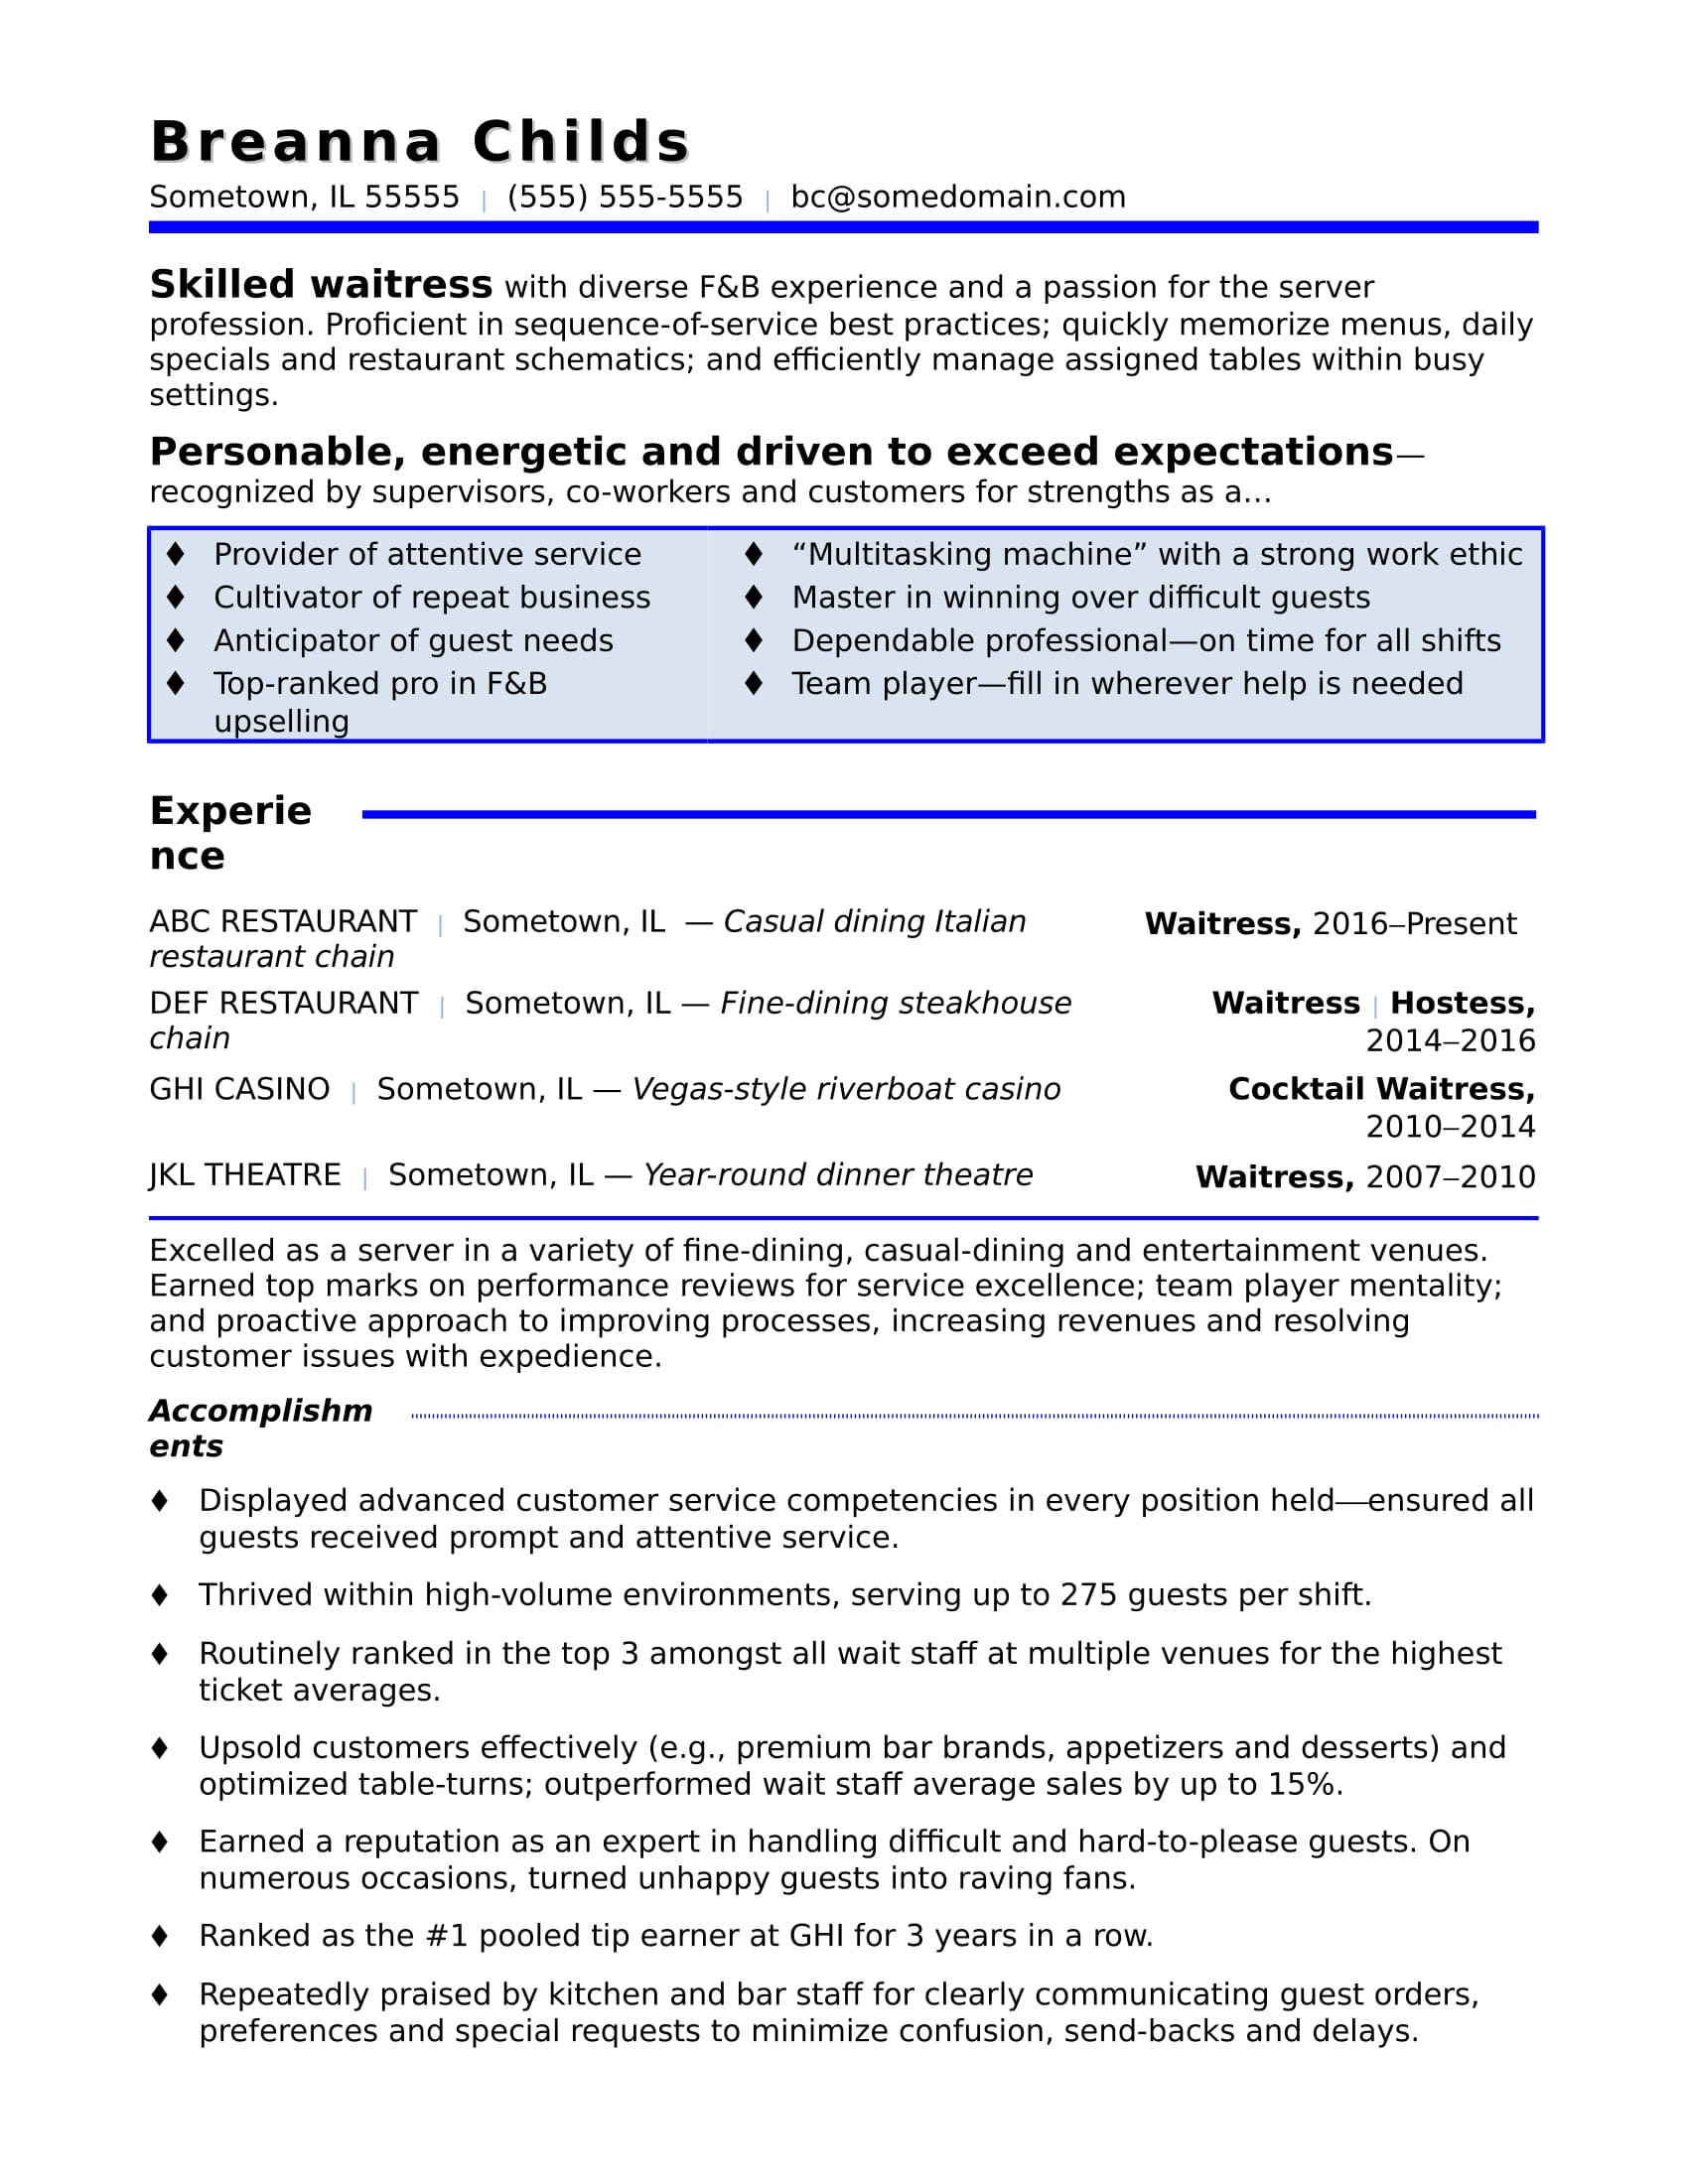 Free Sample Resume for Waitress Position Waitress Resume Sample Monster.com